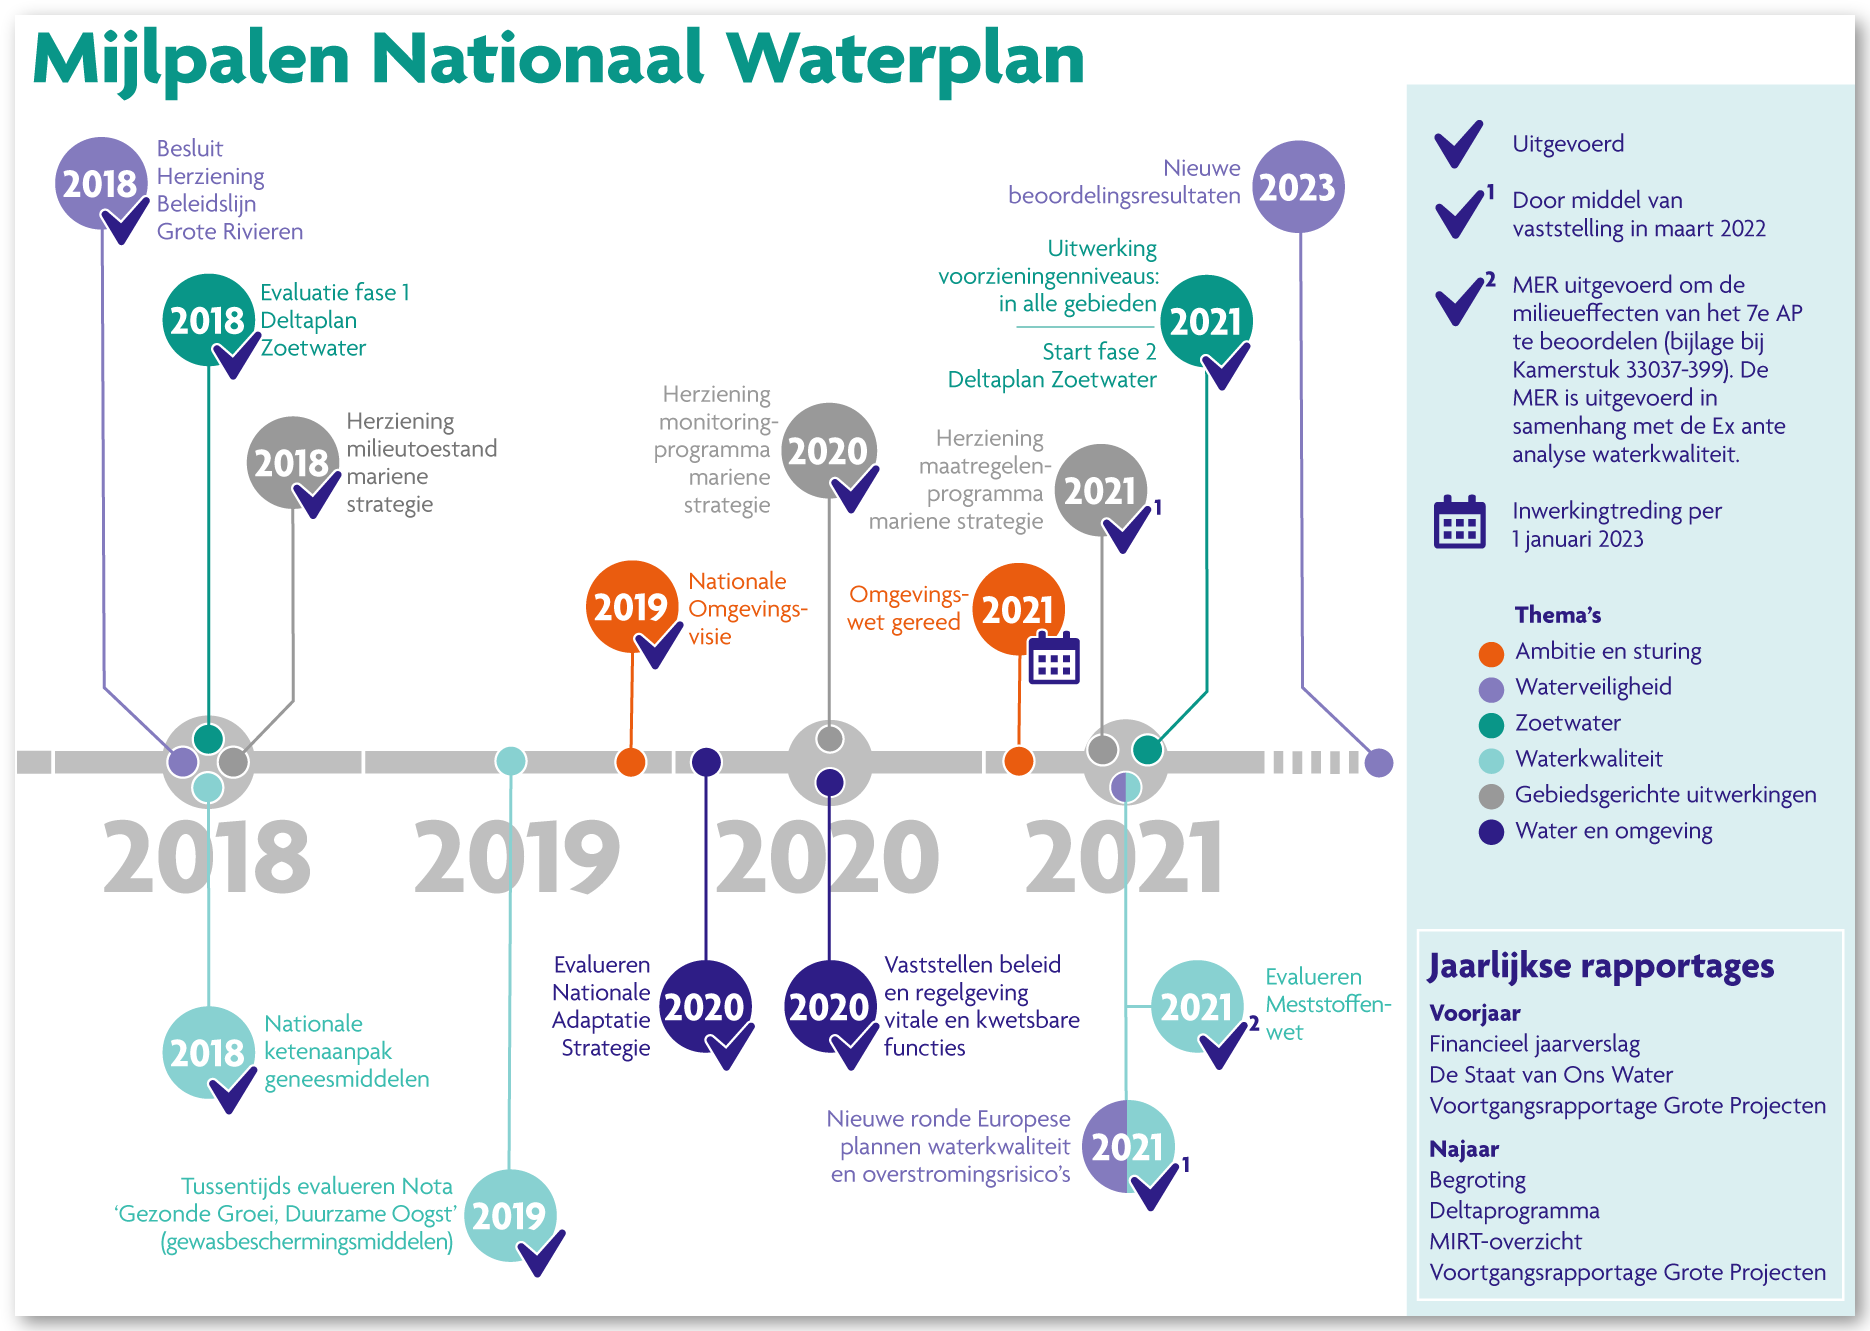 MIjlpalen Nationaal Waterplan (De Staat van ons Water, Ministerie van IenW)